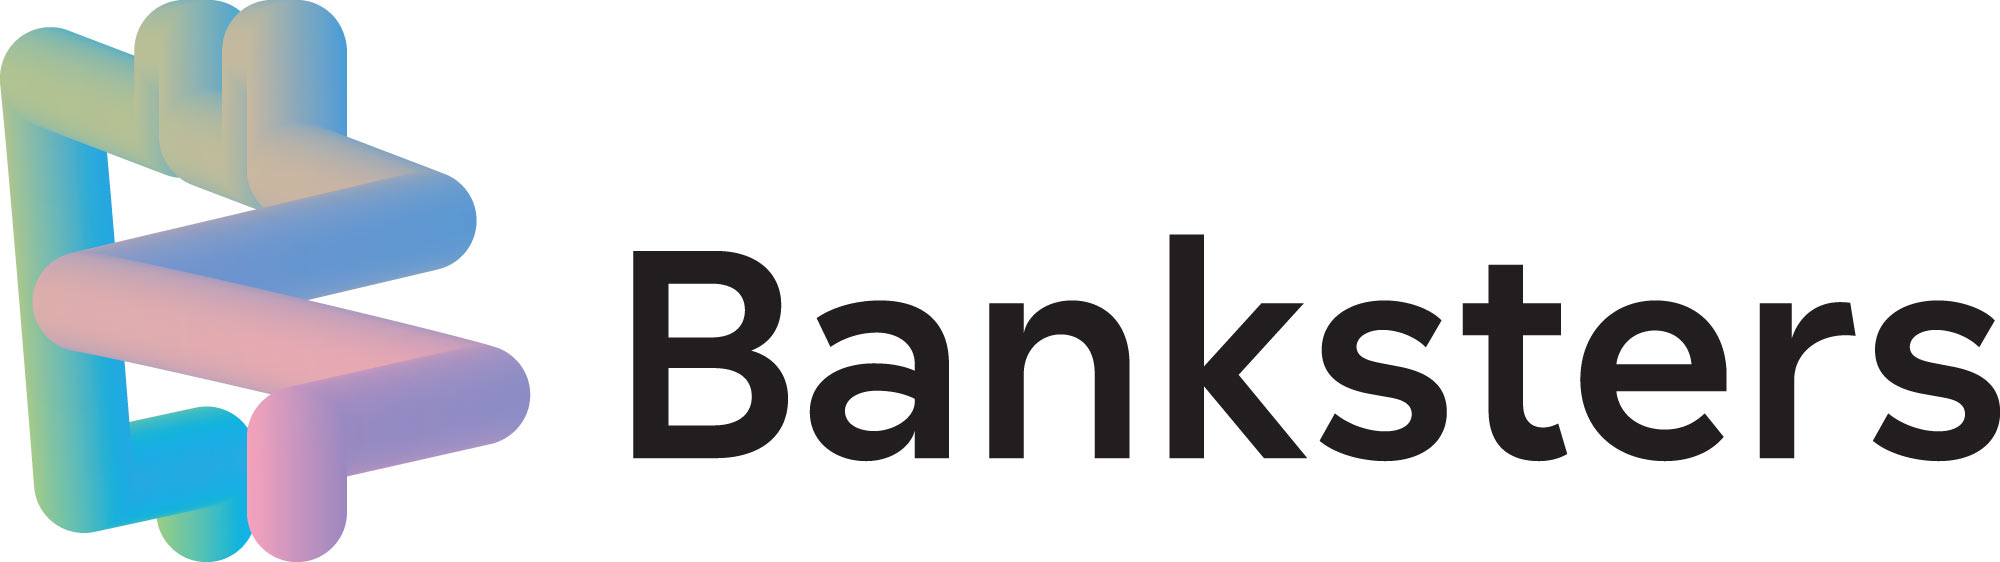 banksters logo2